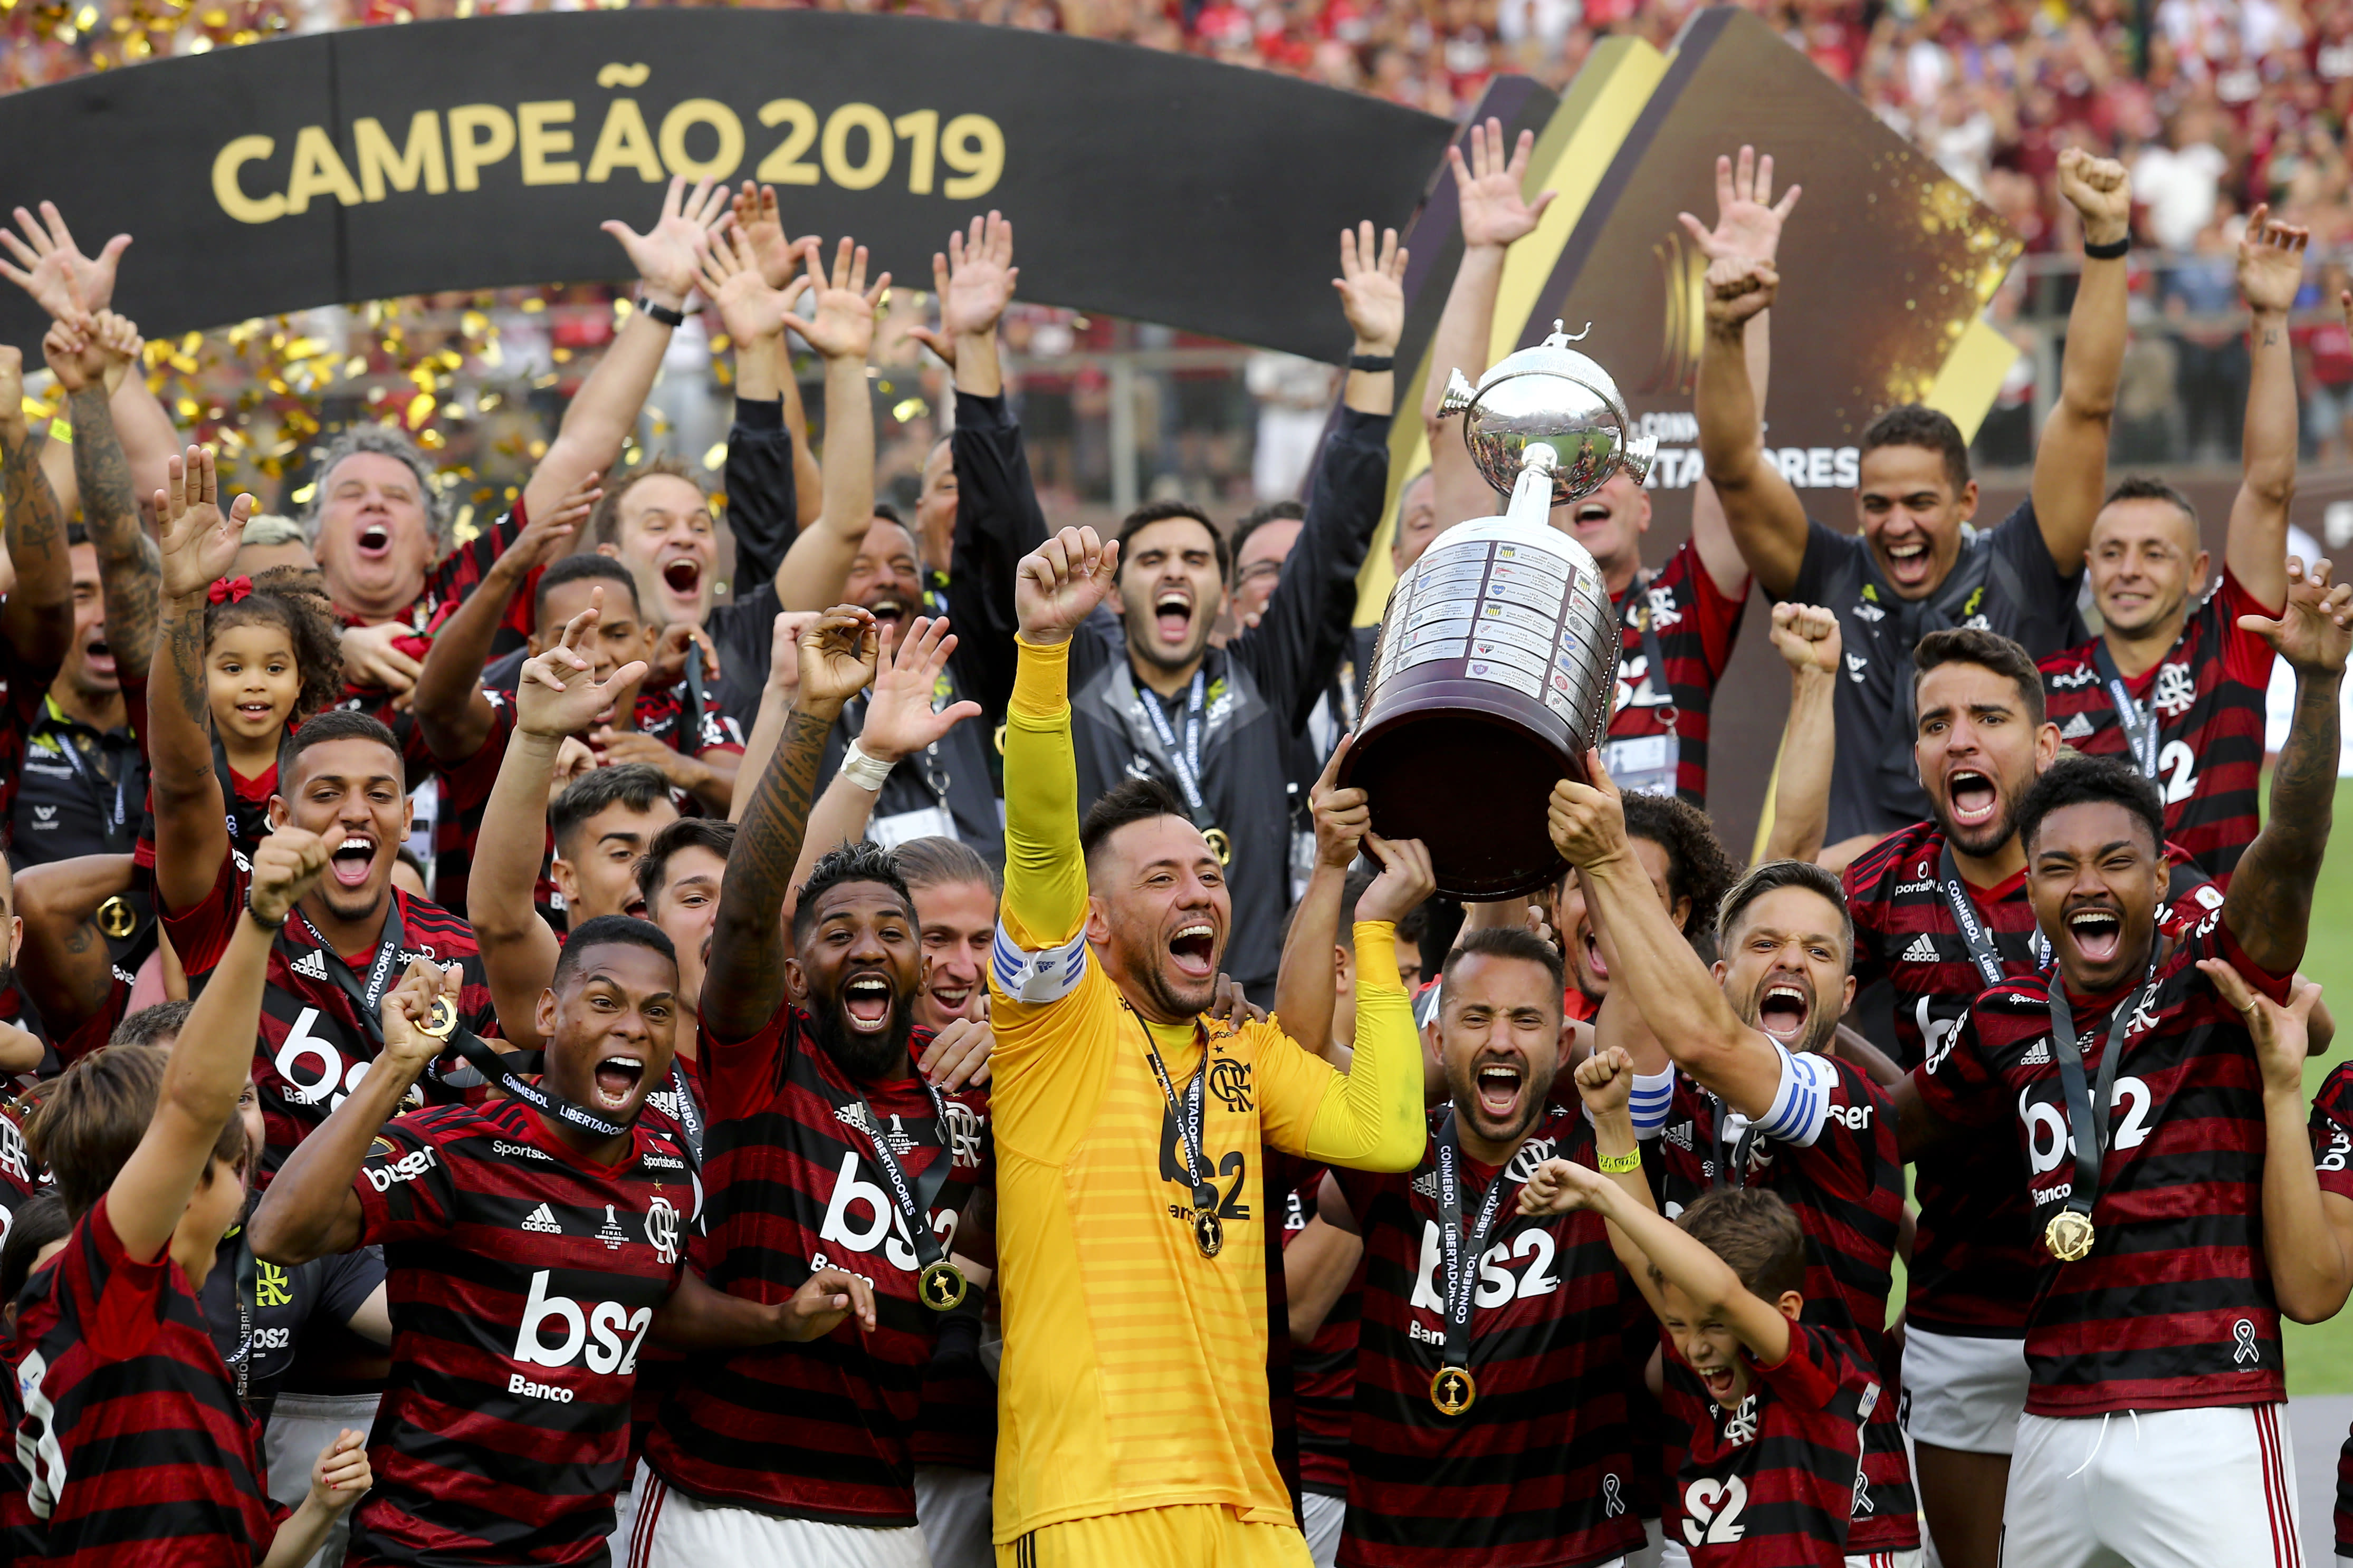 Late goals give Flamengo dramatic Copa Libertadores title